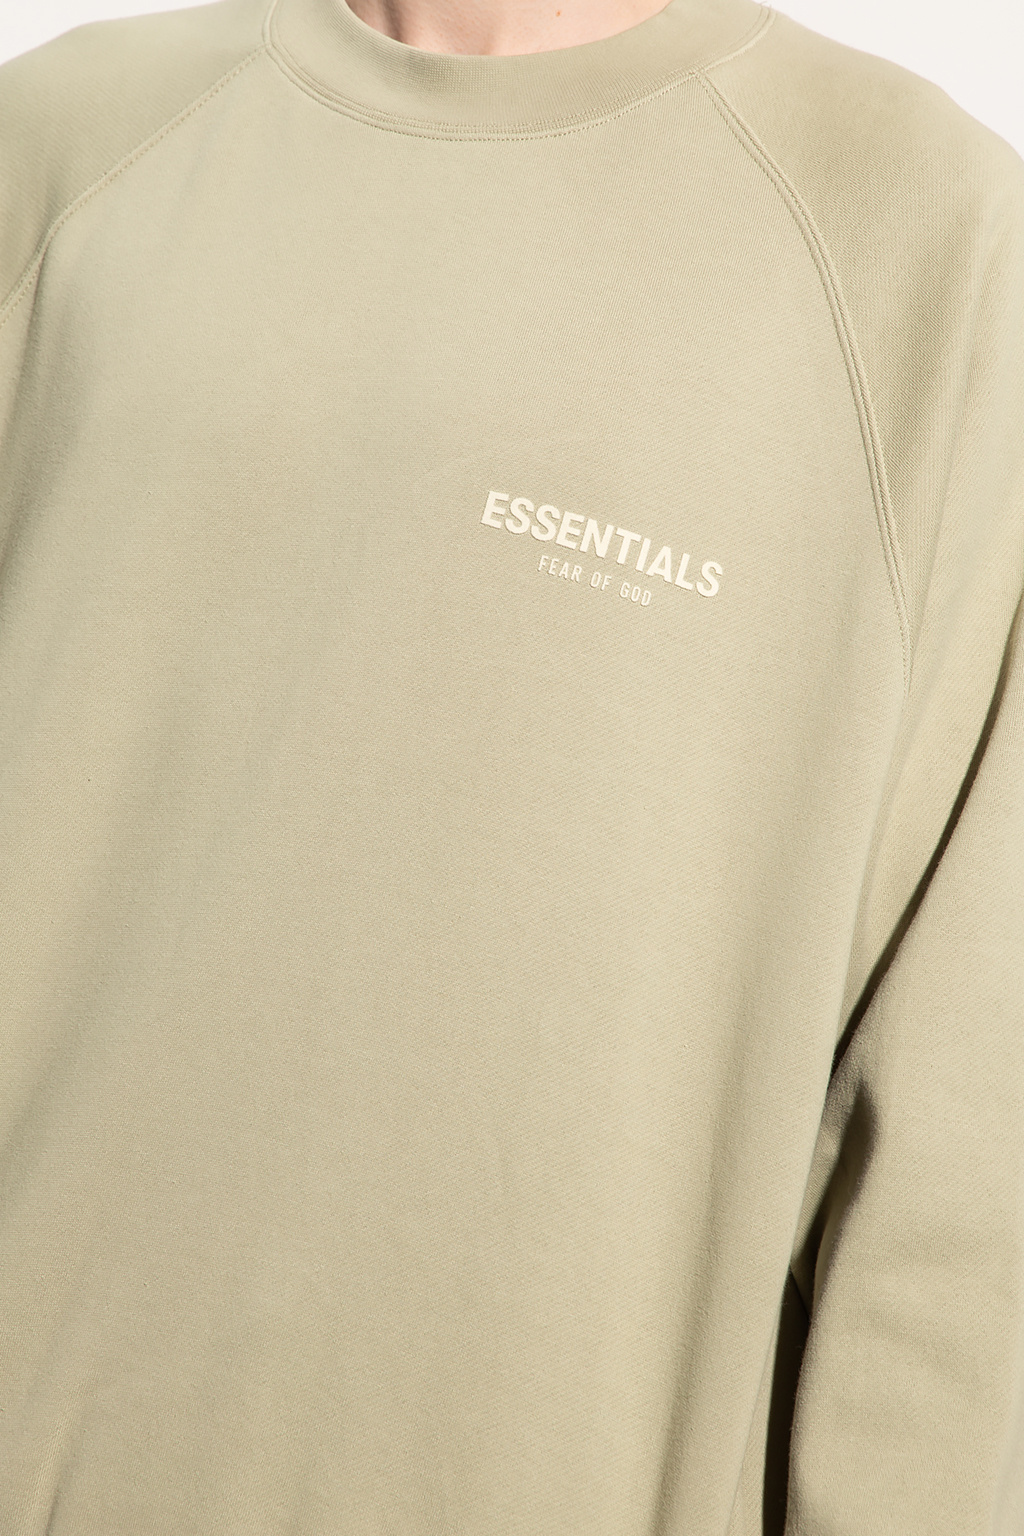 Green Sweatshirt with logo Fear Of God Essentials - Vitkac Canada